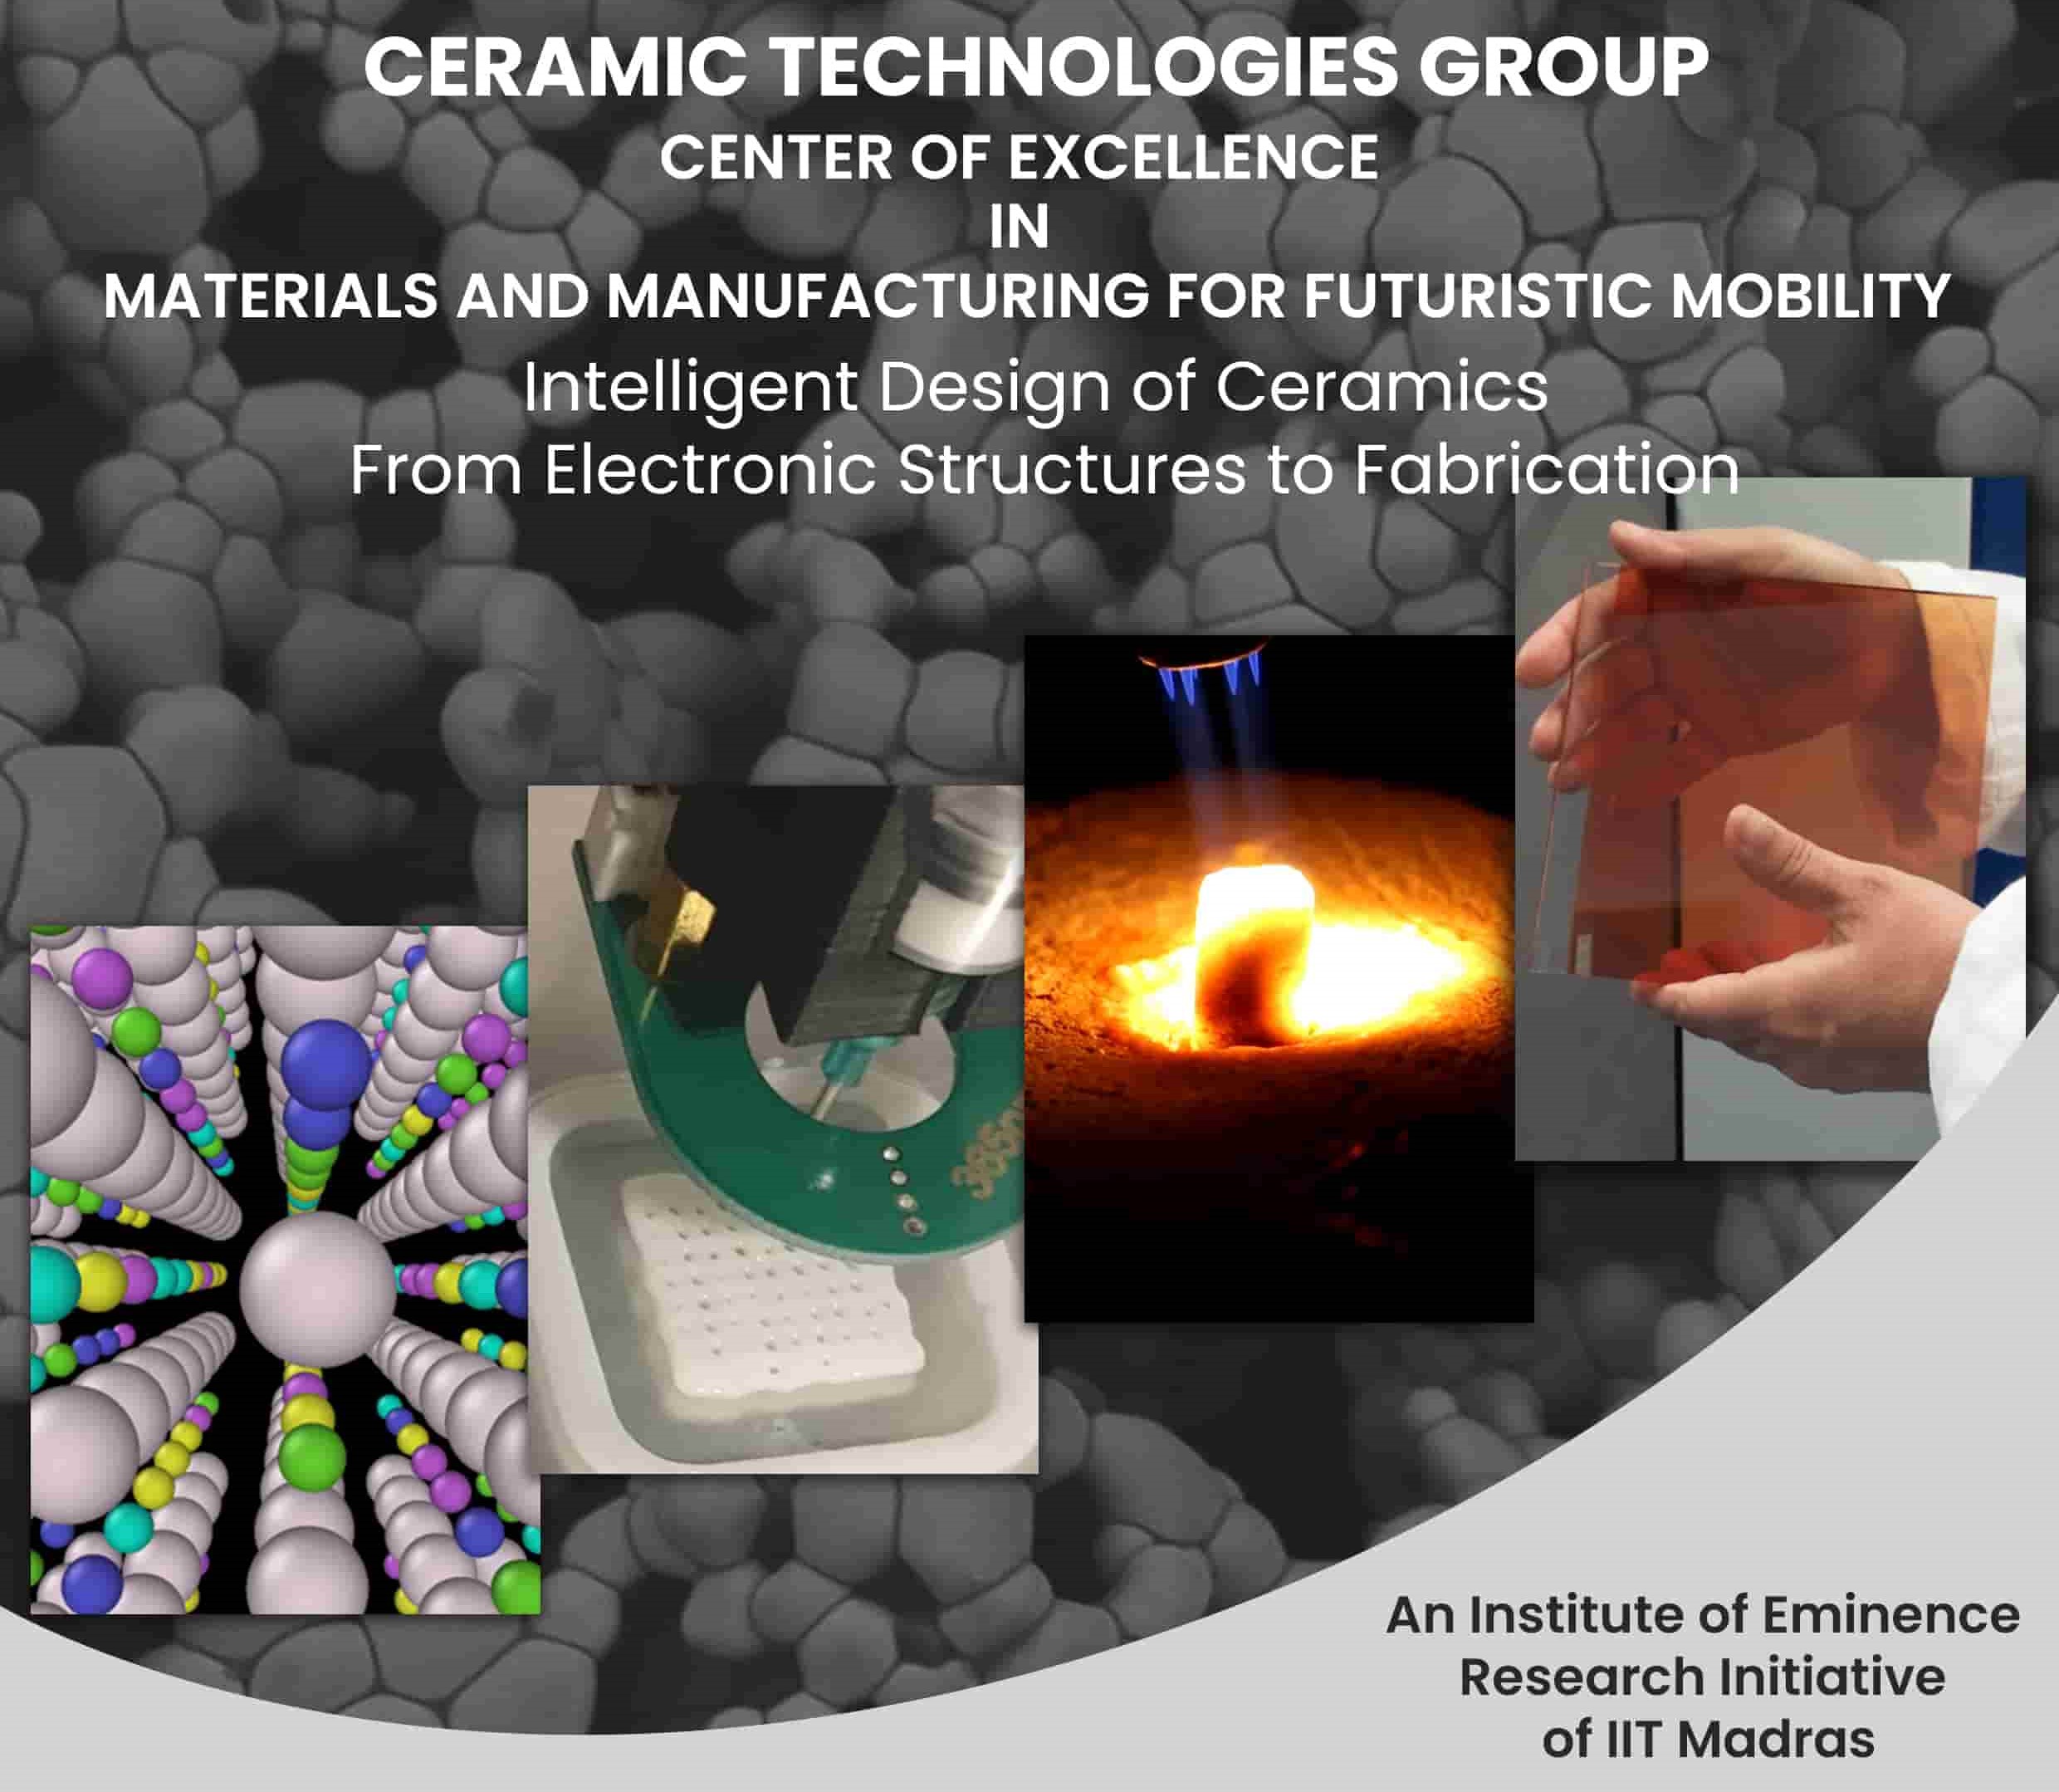 Ceramics Technologies